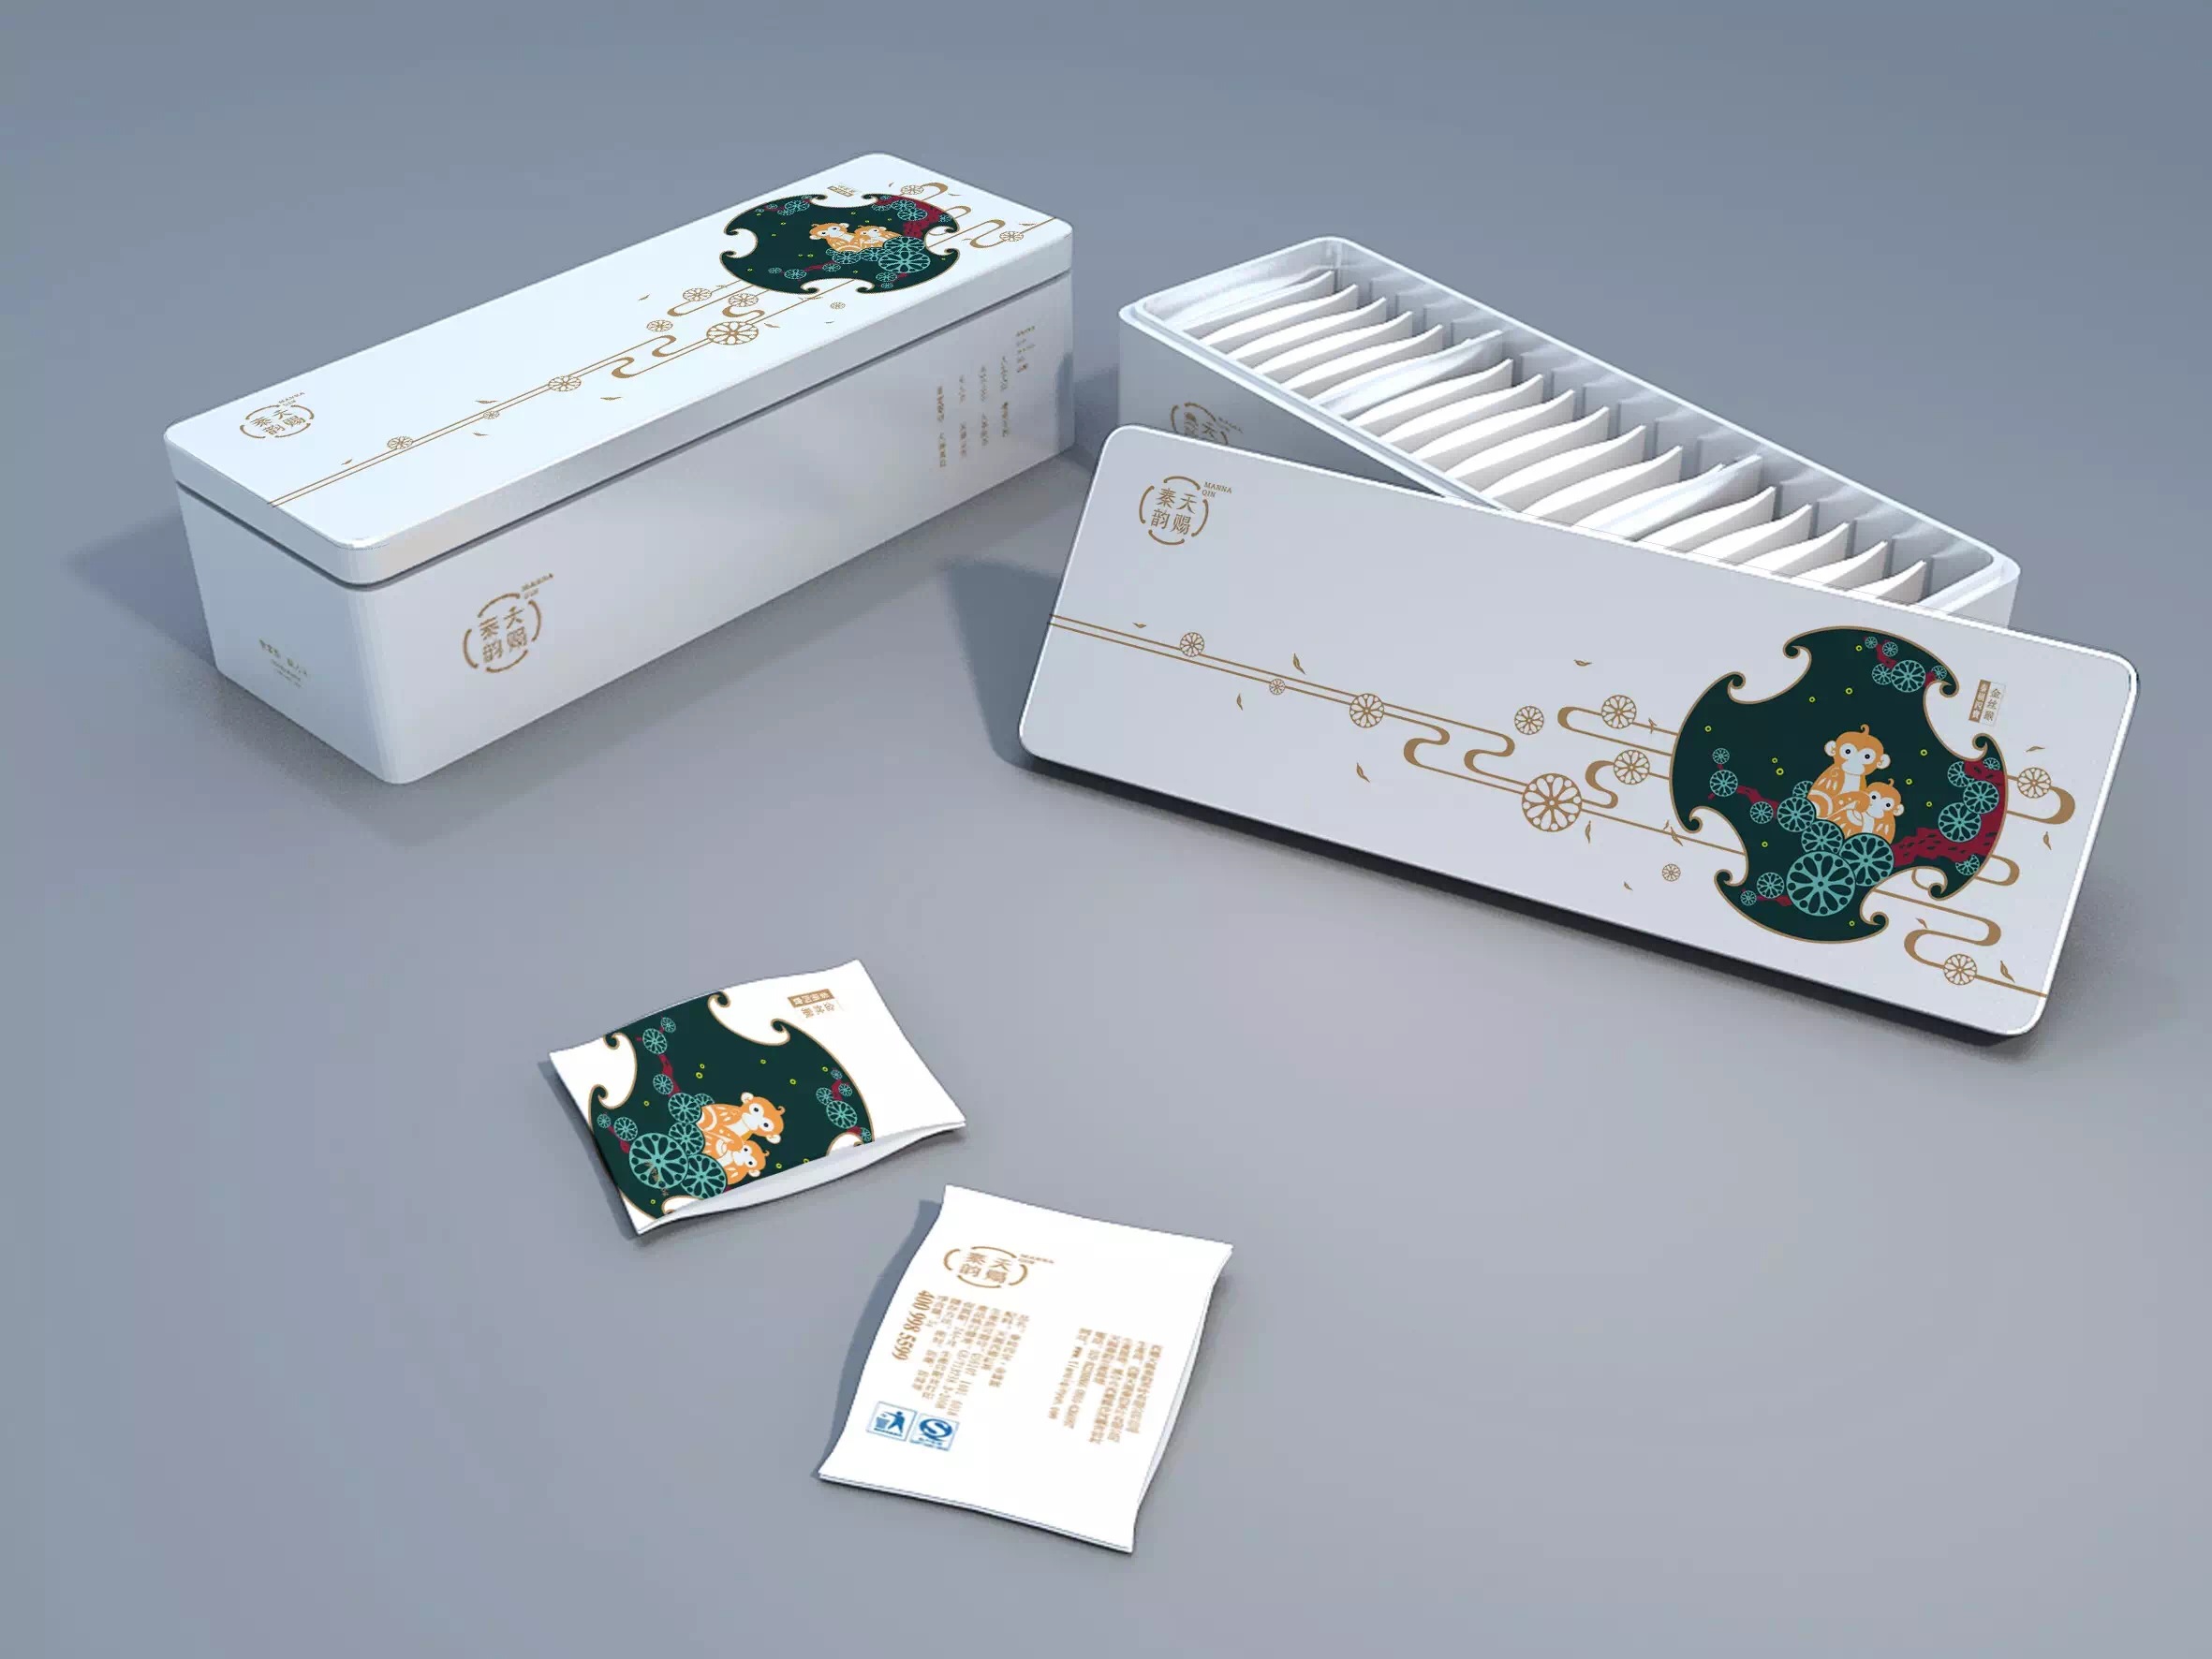 东莞市江西白茶包装铁盒、安吉白茶铁盒厂家供应用于包装茶叶的江西白茶包装铁盒、安吉白茶铁盒